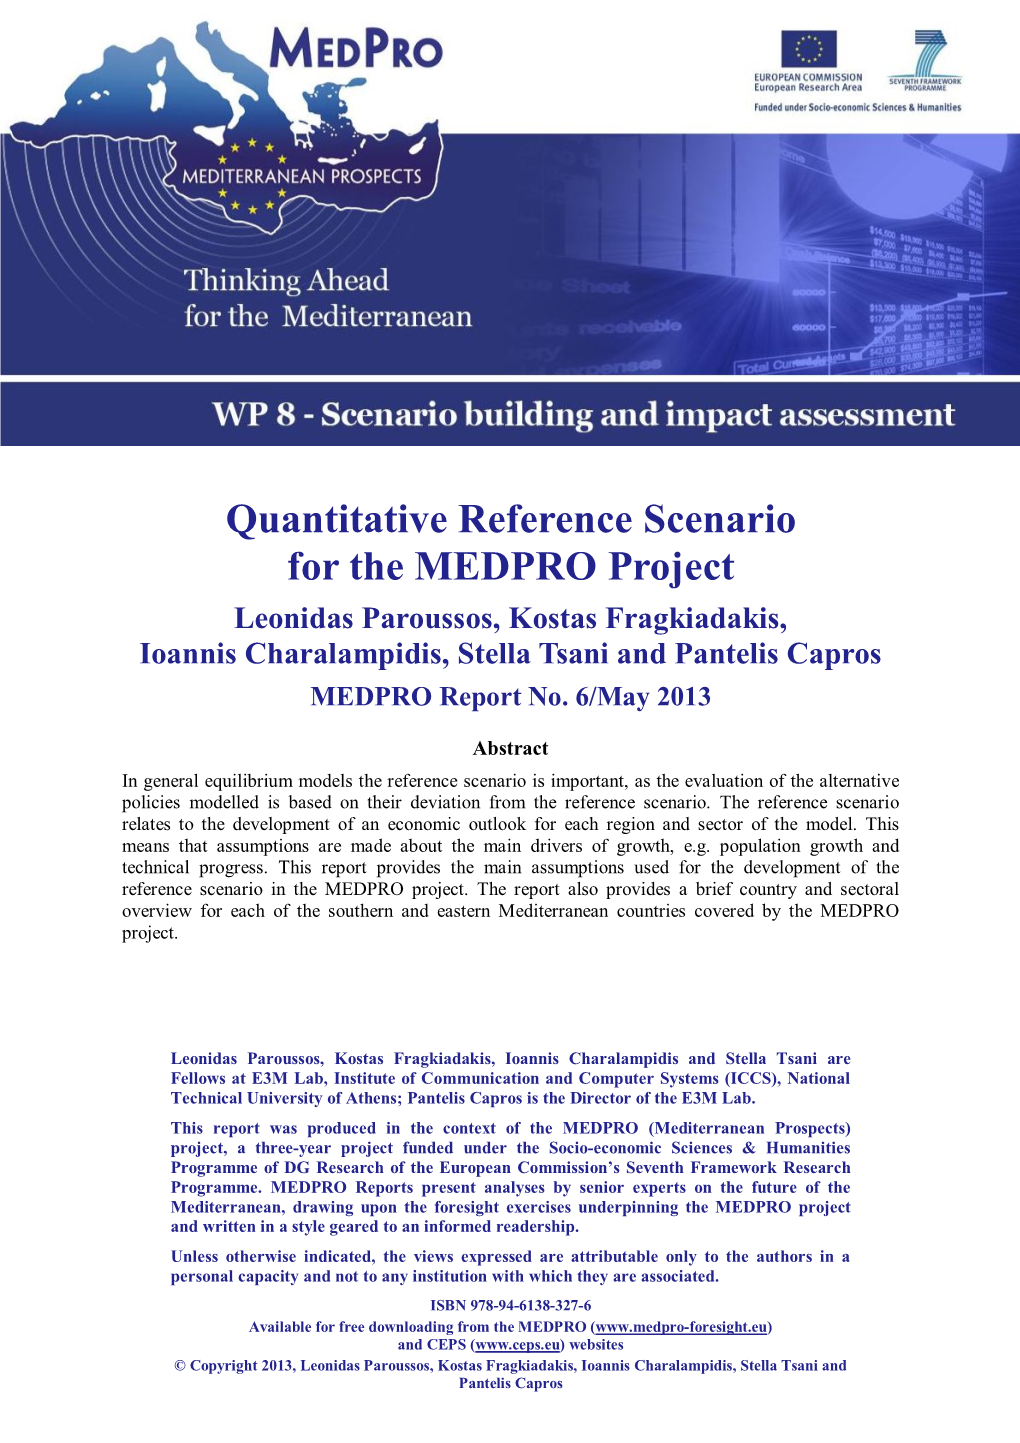 Quantitative Reference Scenario for the MEDPRO Project